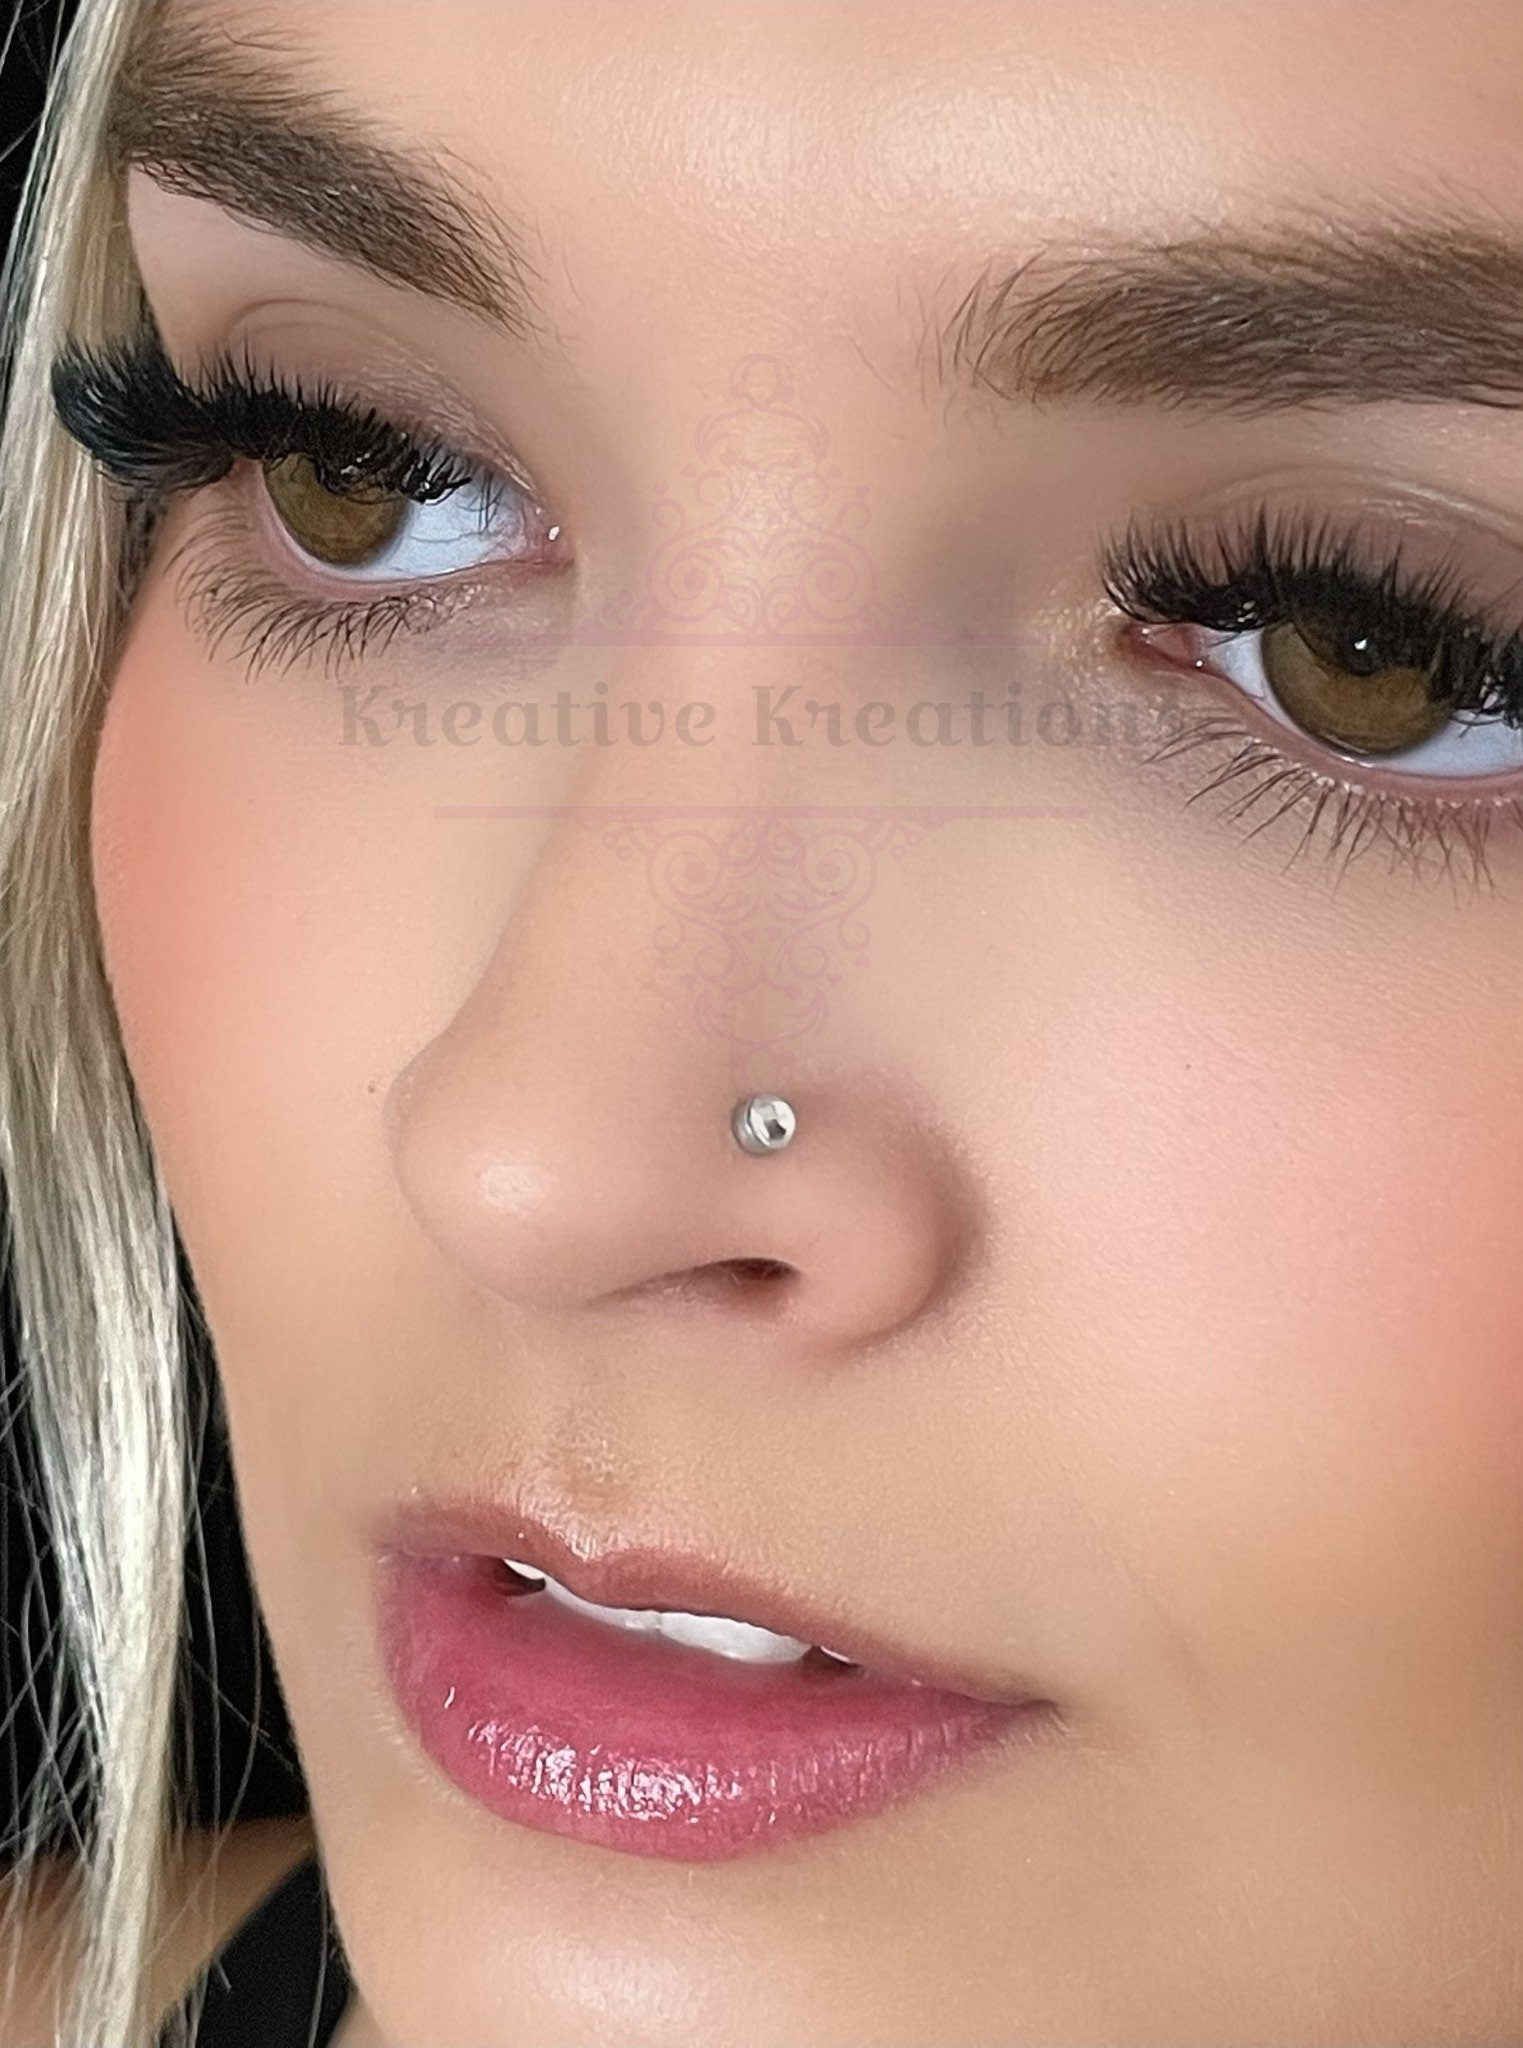 Fake Nose Ring Hoop Magnetic Nose Ring Fake Noes Ring Stud Fake Nose  Piercing 